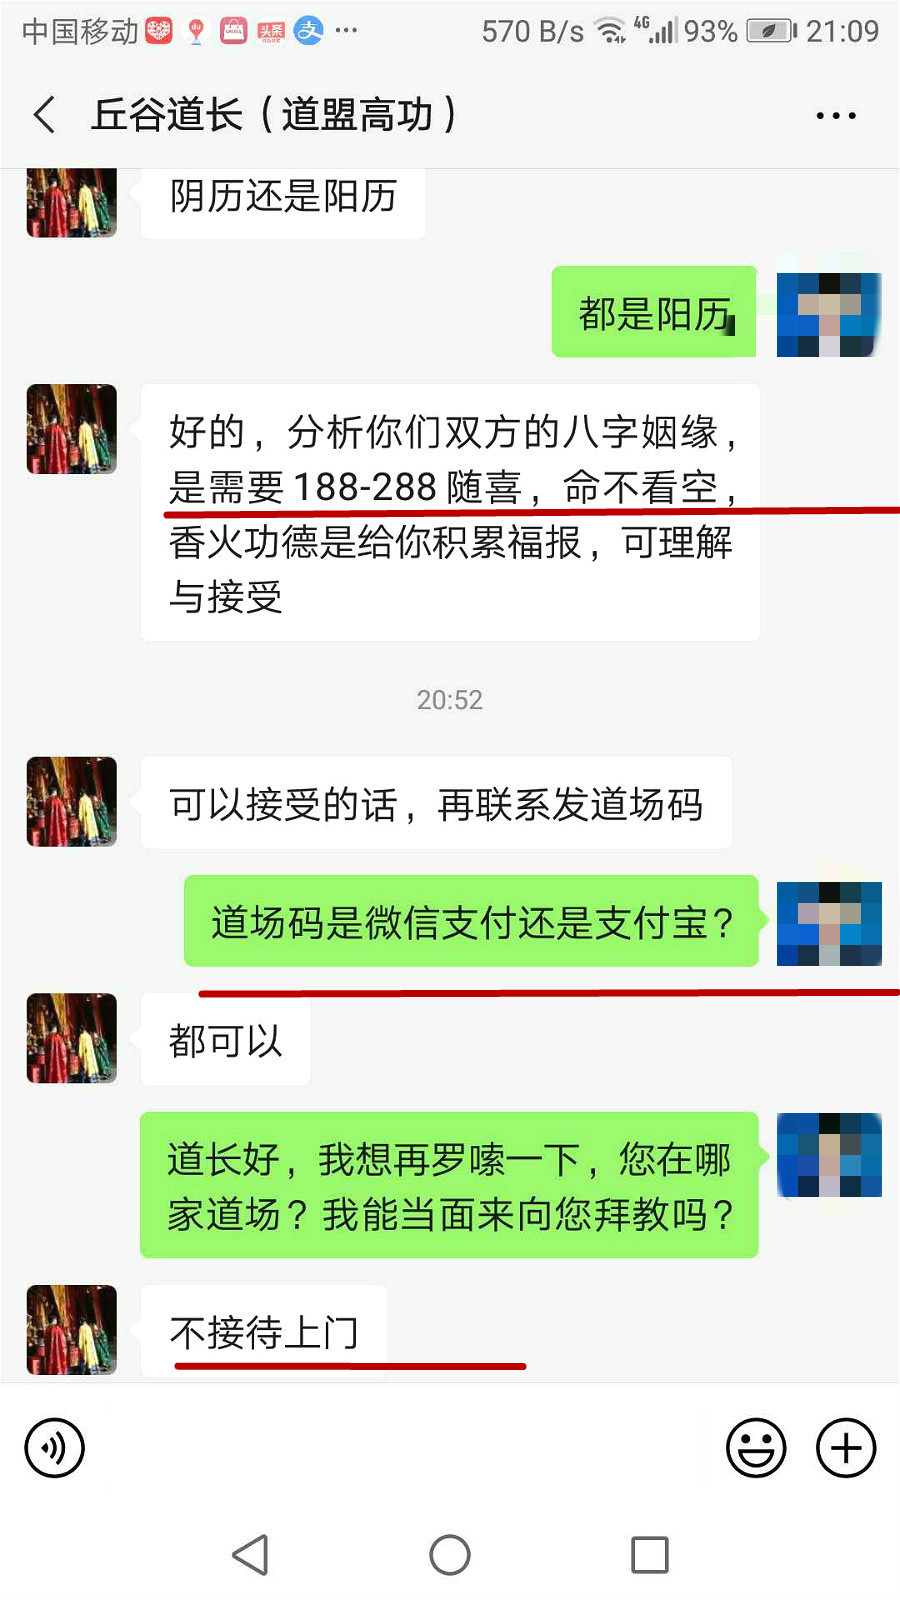 被骗30多万的刘女士已报案，网上还有多少“王圣夫”大师在“施法捞钱”？